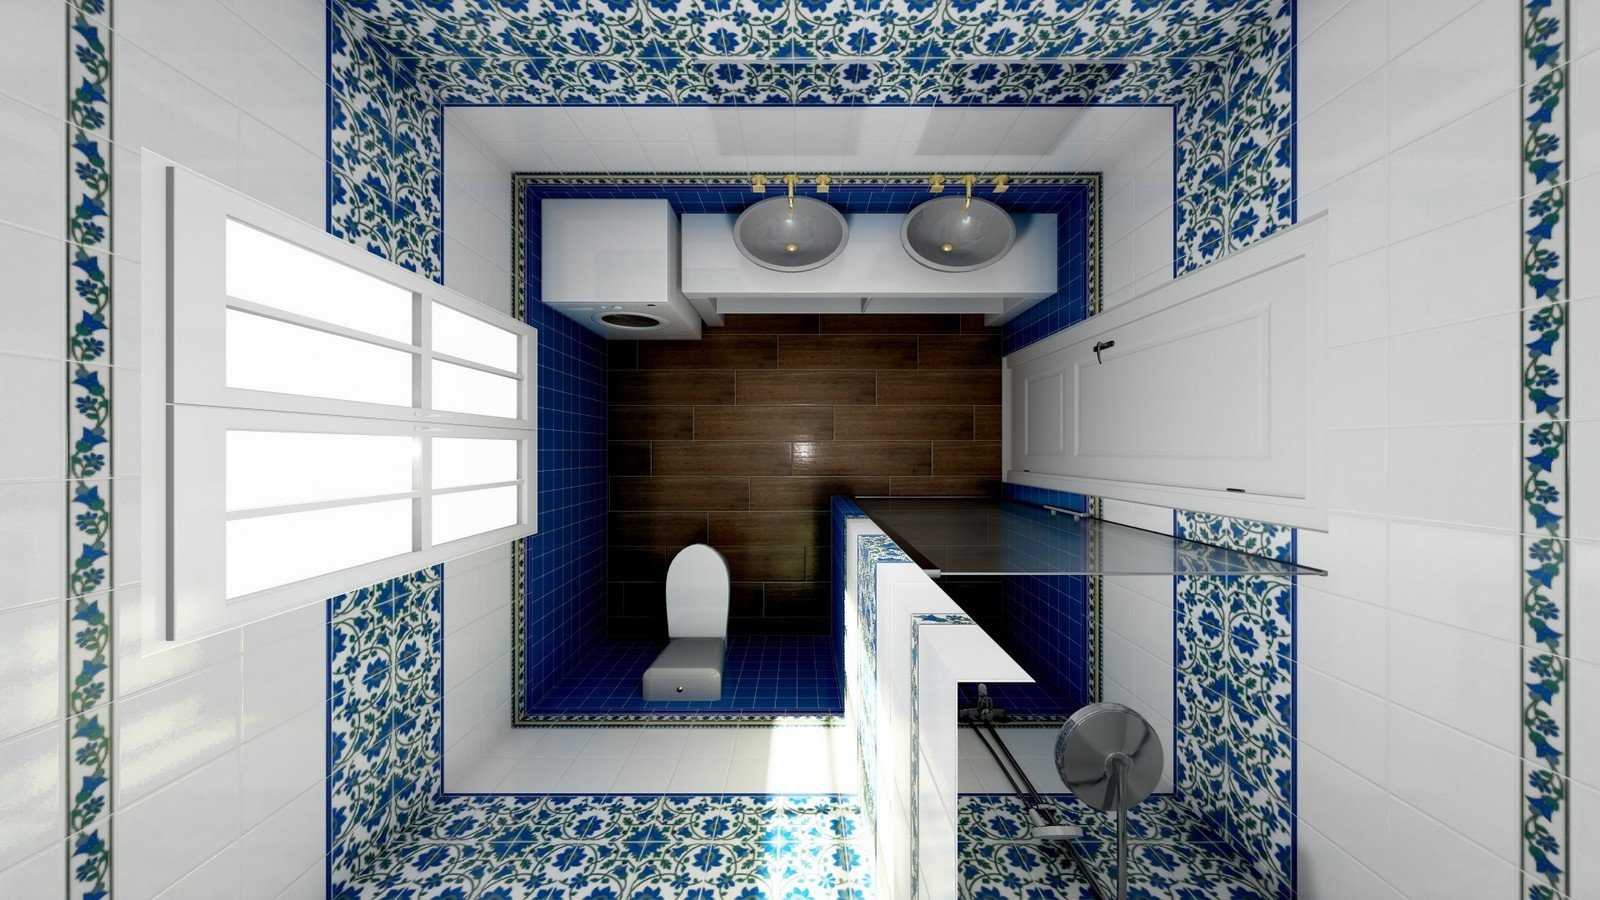 Ванная 2021-2022 (+50 фото) - самые модные цвета, материалы и идеи дизайна | дизайн и интерьер ванной комнаты